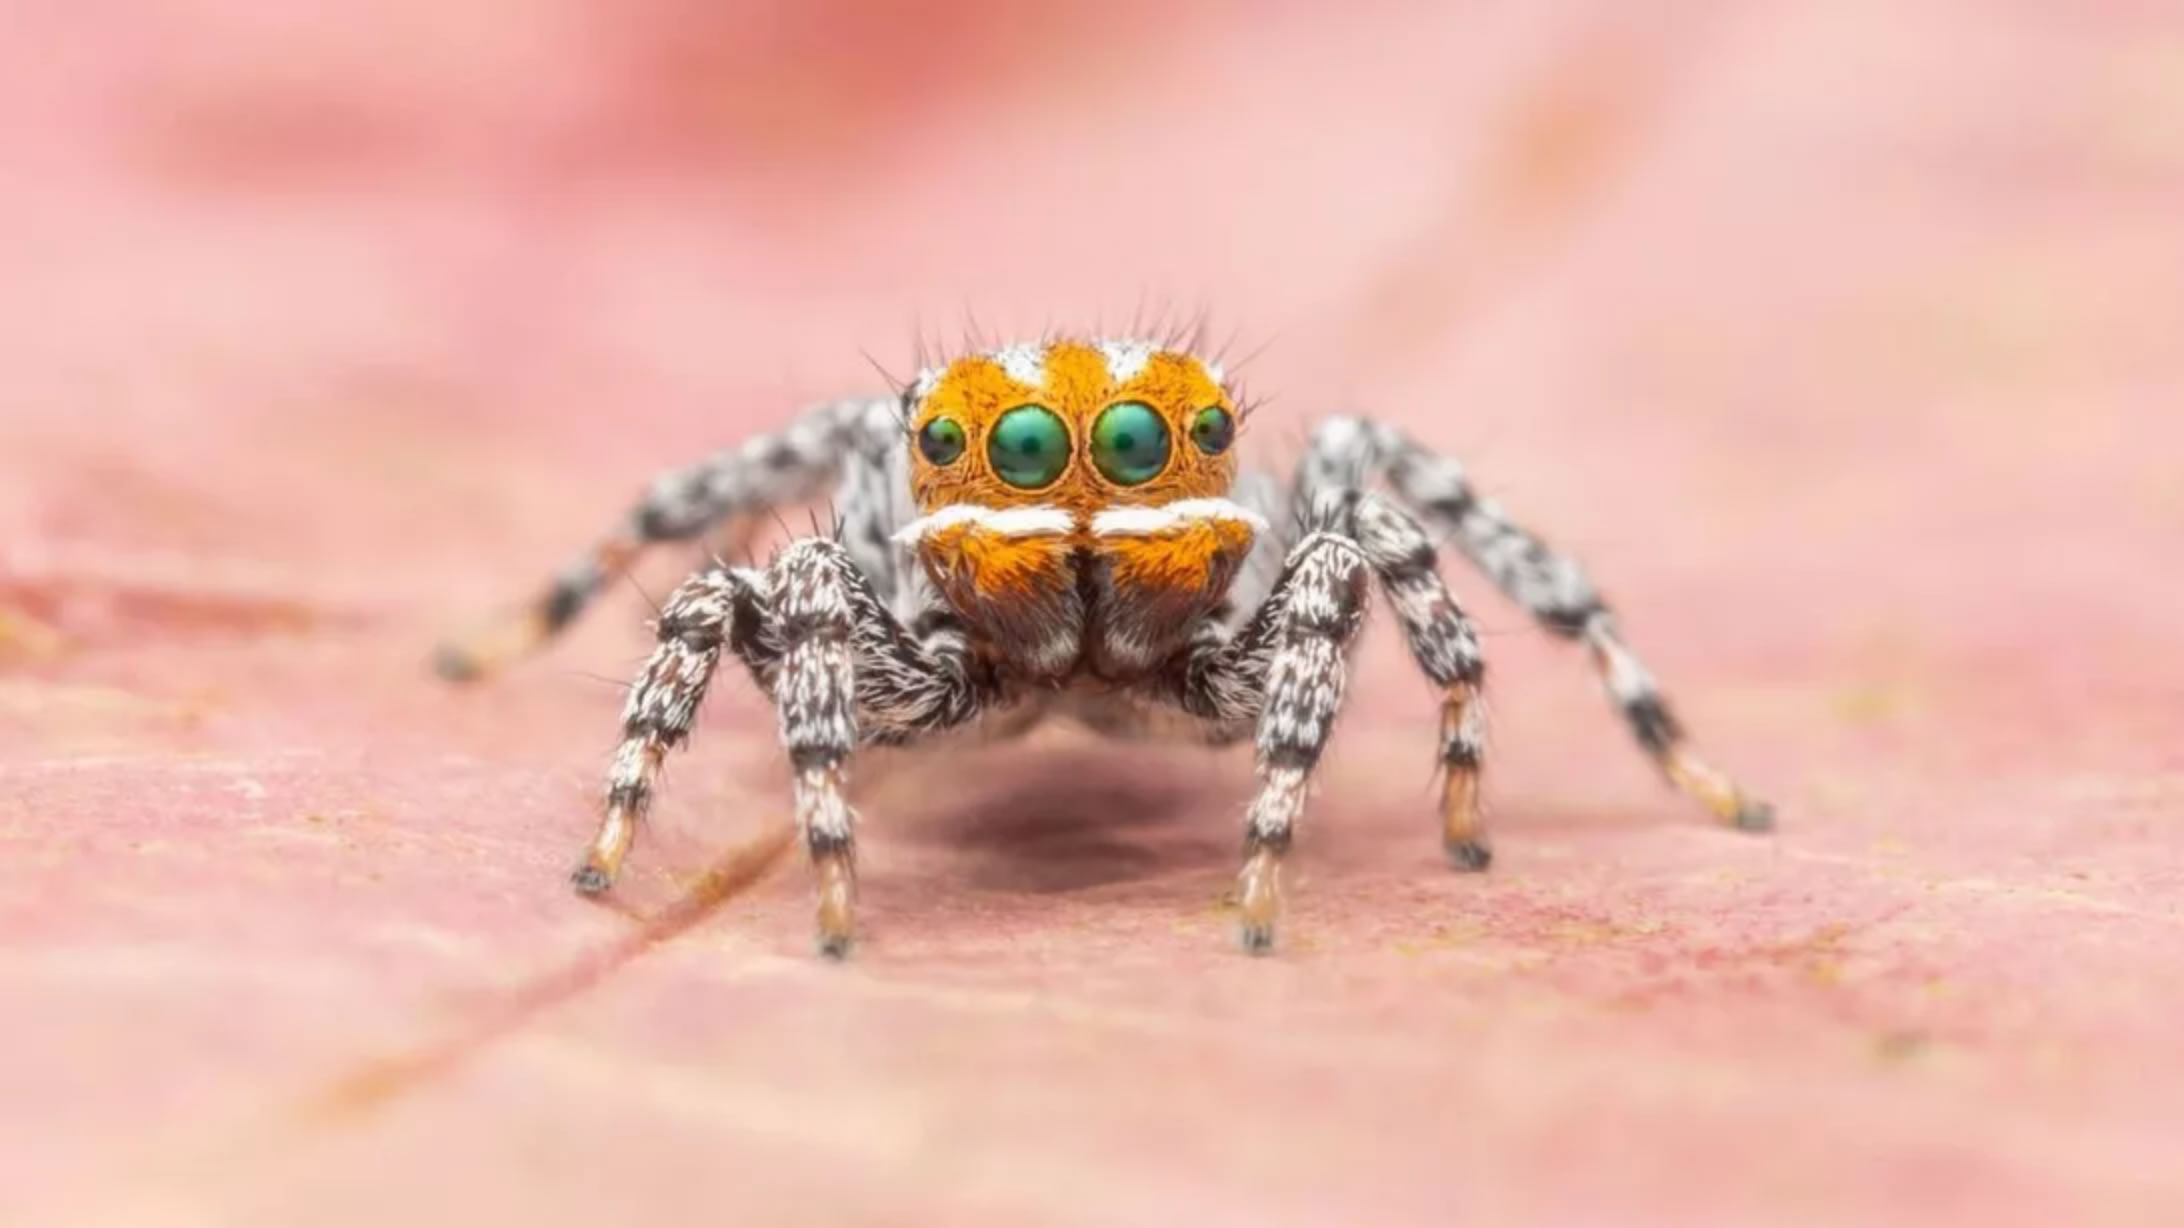 澳大利亚发现孔雀蜘蛛一个新品种Maratus nemo